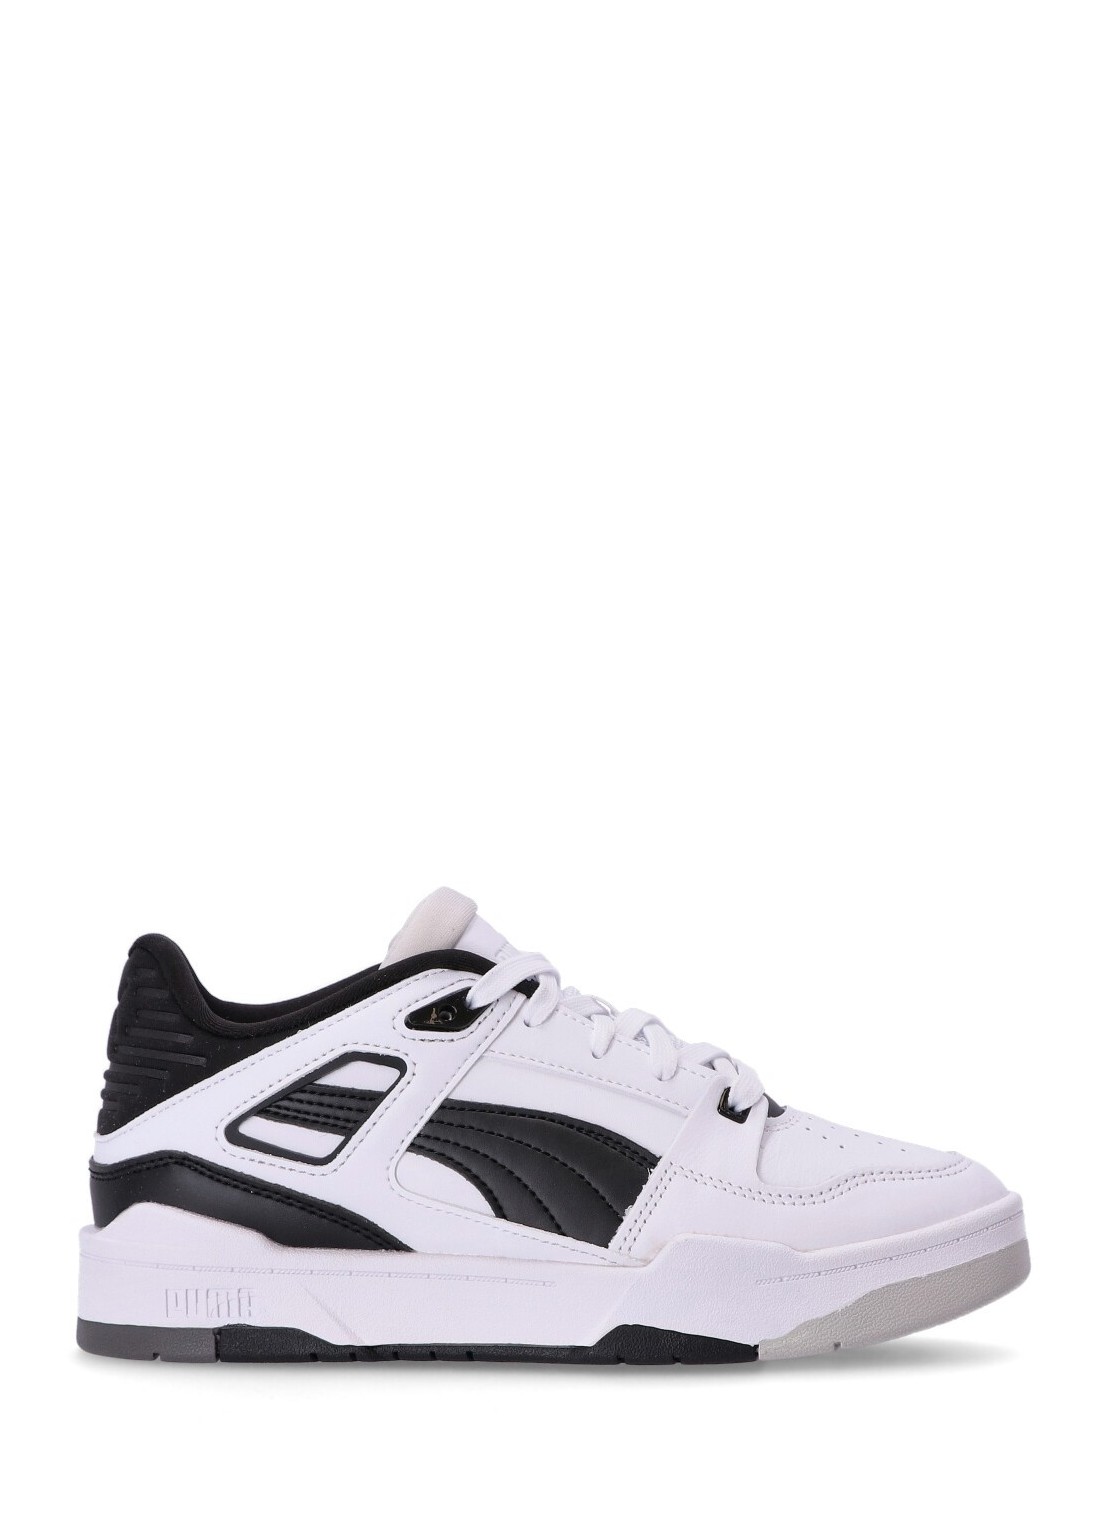 Sneaker puma sneaker woman slipstream invdr wns 38627003 white  black glacier gray talla 39
 